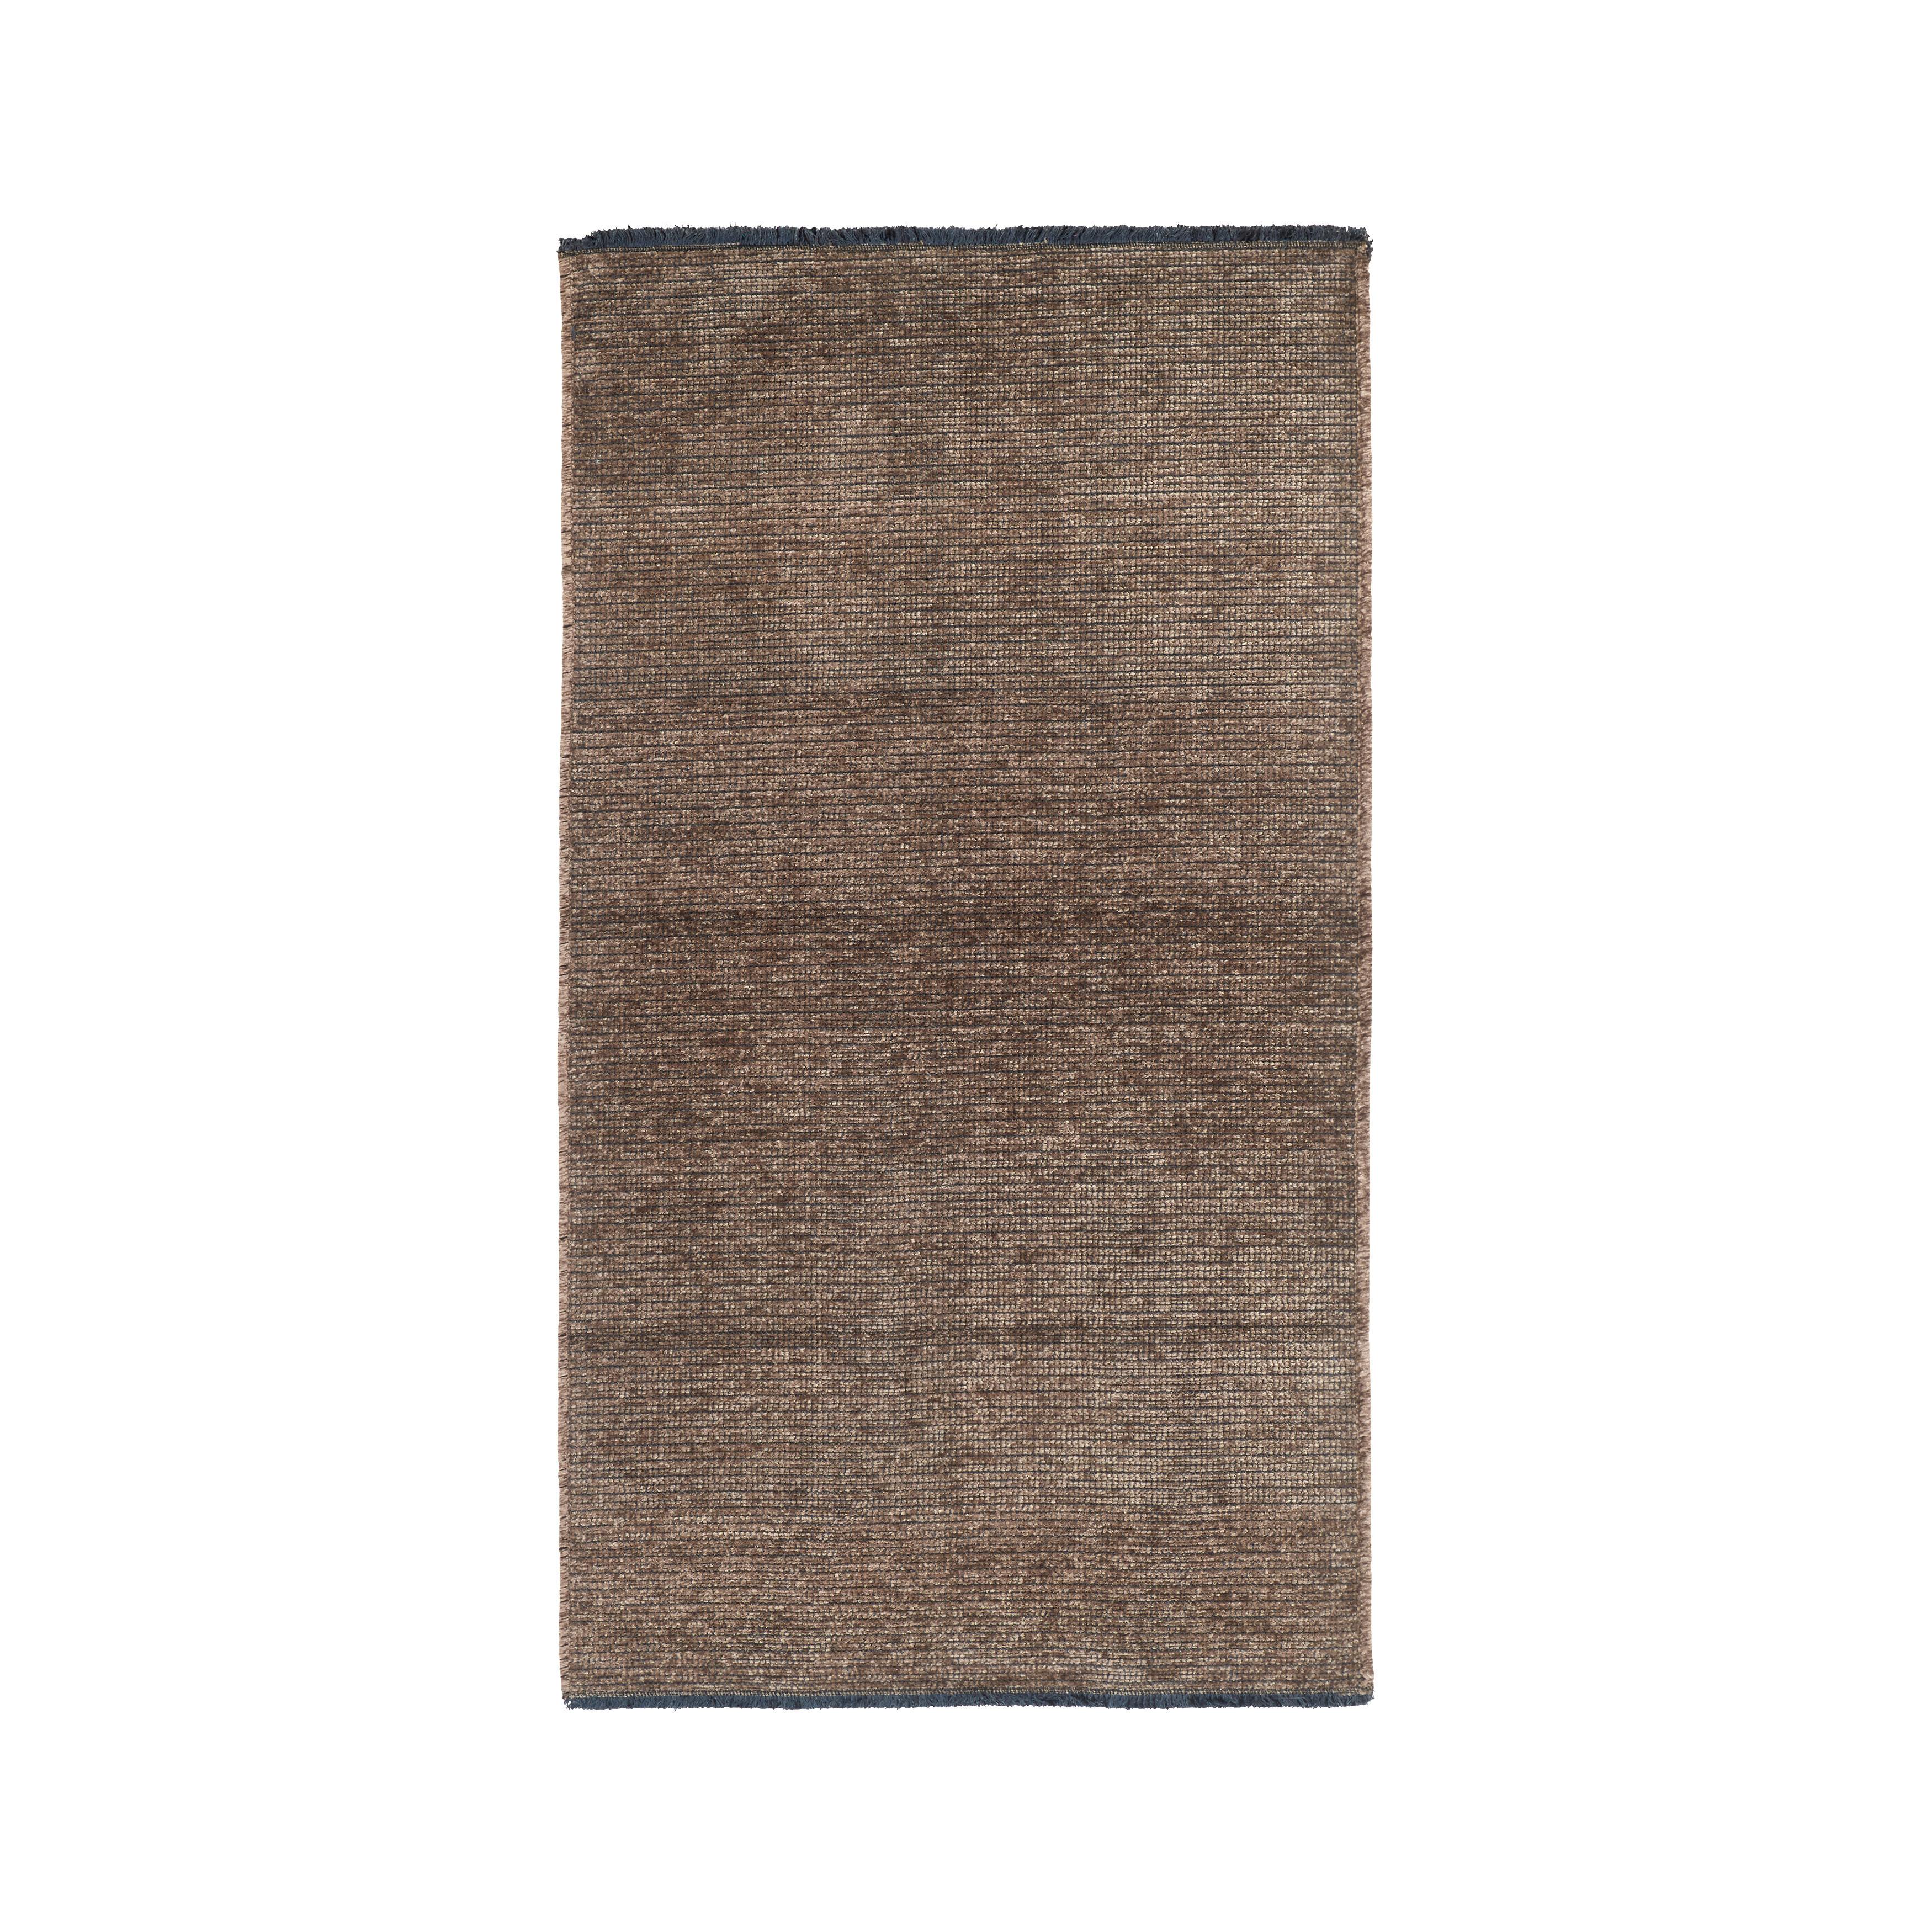 Tkaný Koberec Silke 2, Š/d: 120/170cm - hnedá, Romantický / Vidiecky, textil (120/170cm) - Modern Living